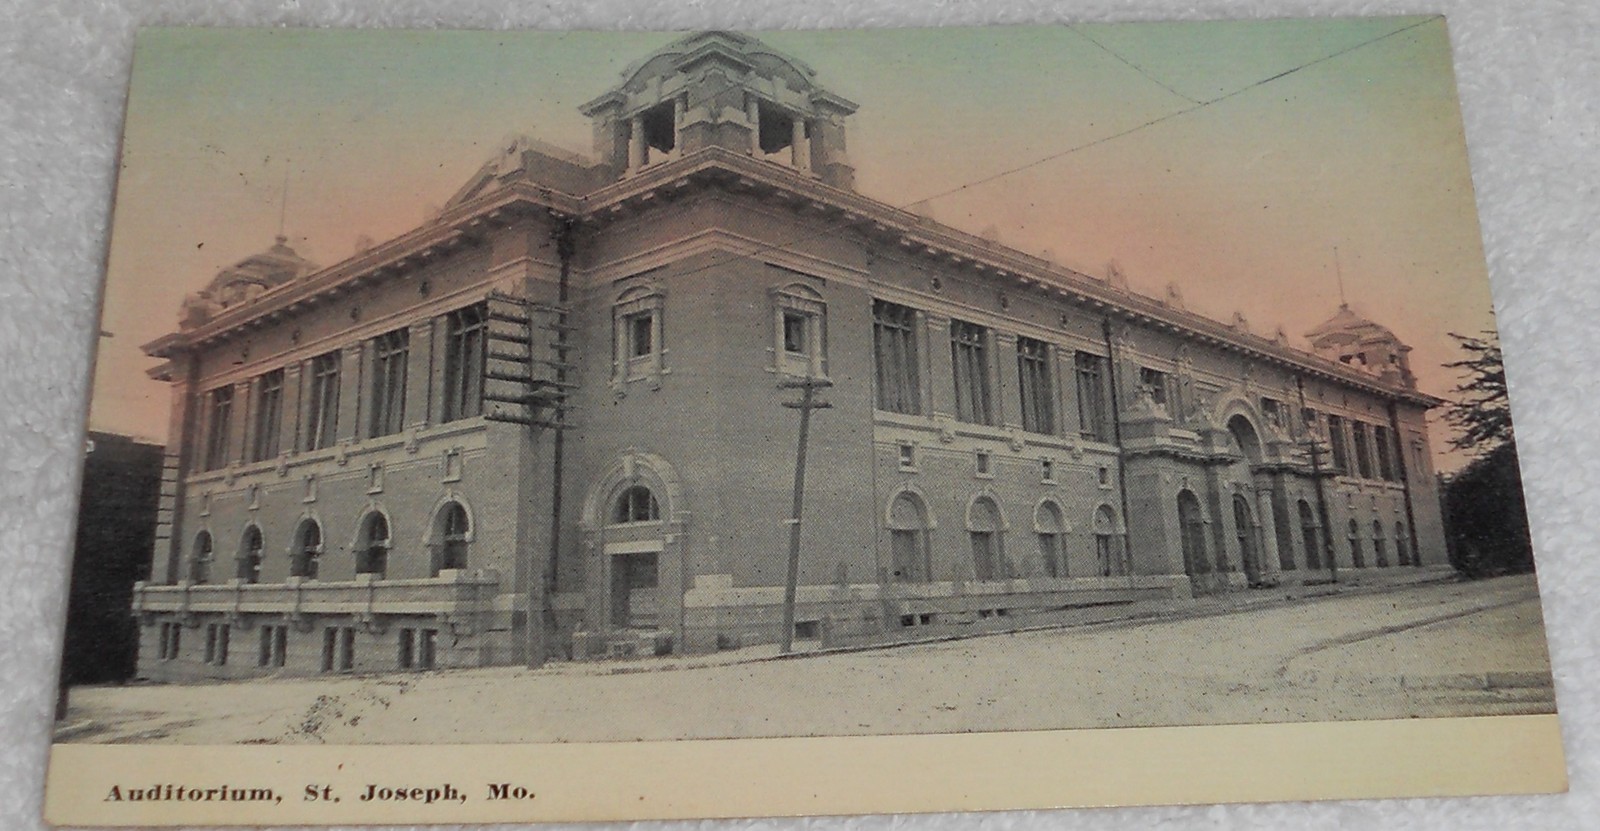 City Auditorium St. Joseph Mo.